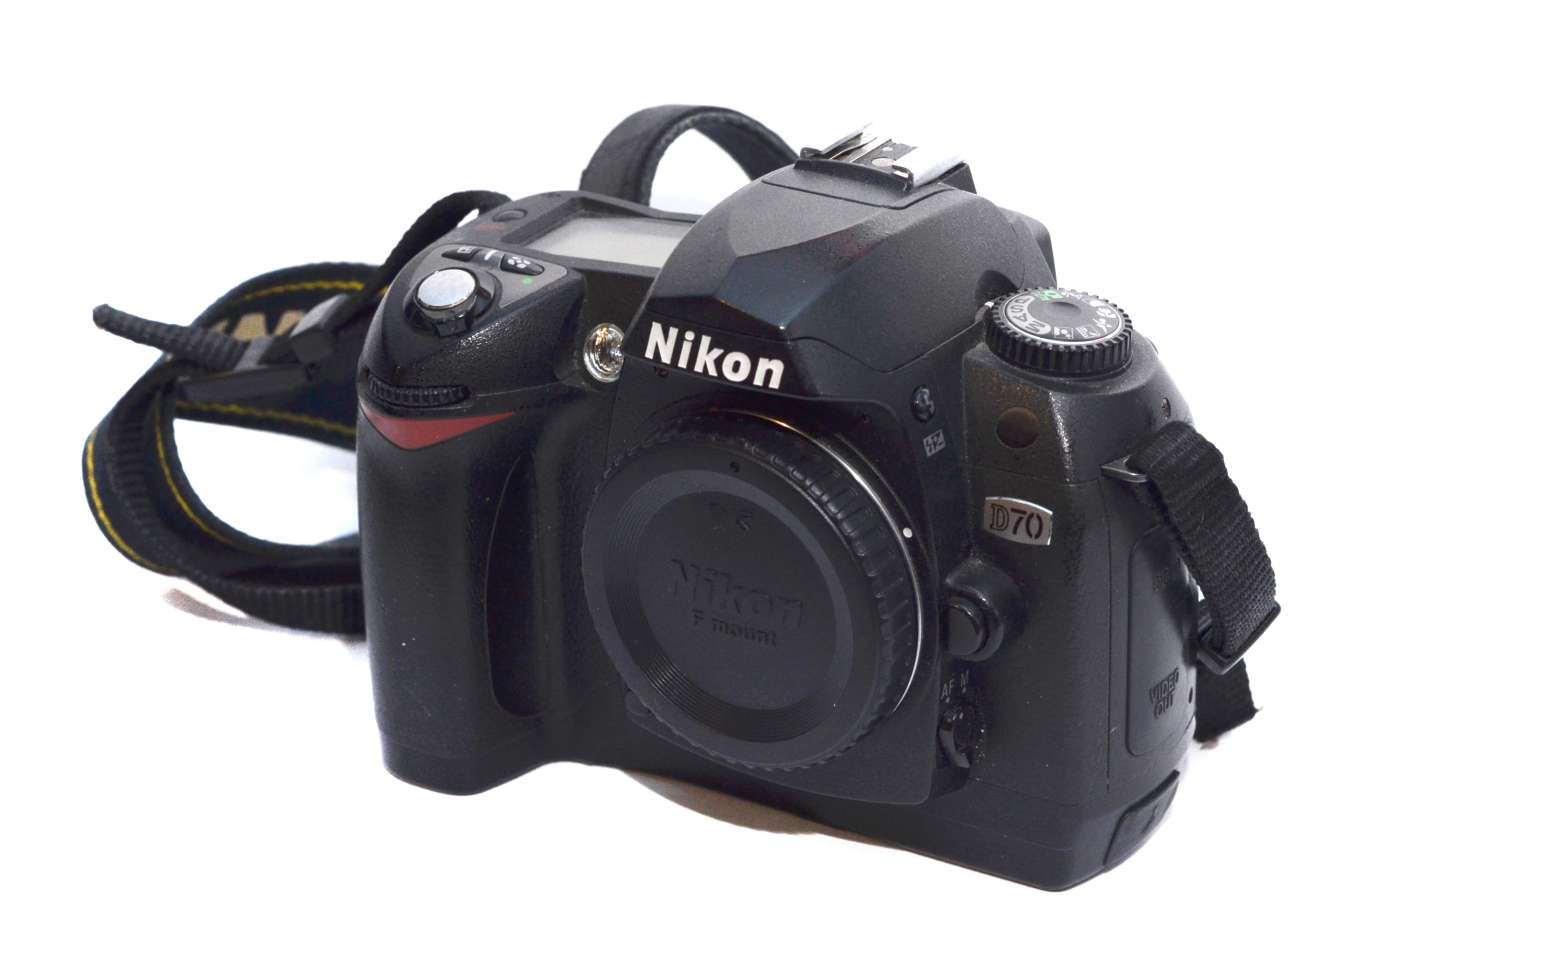 Photo of Nikon D70